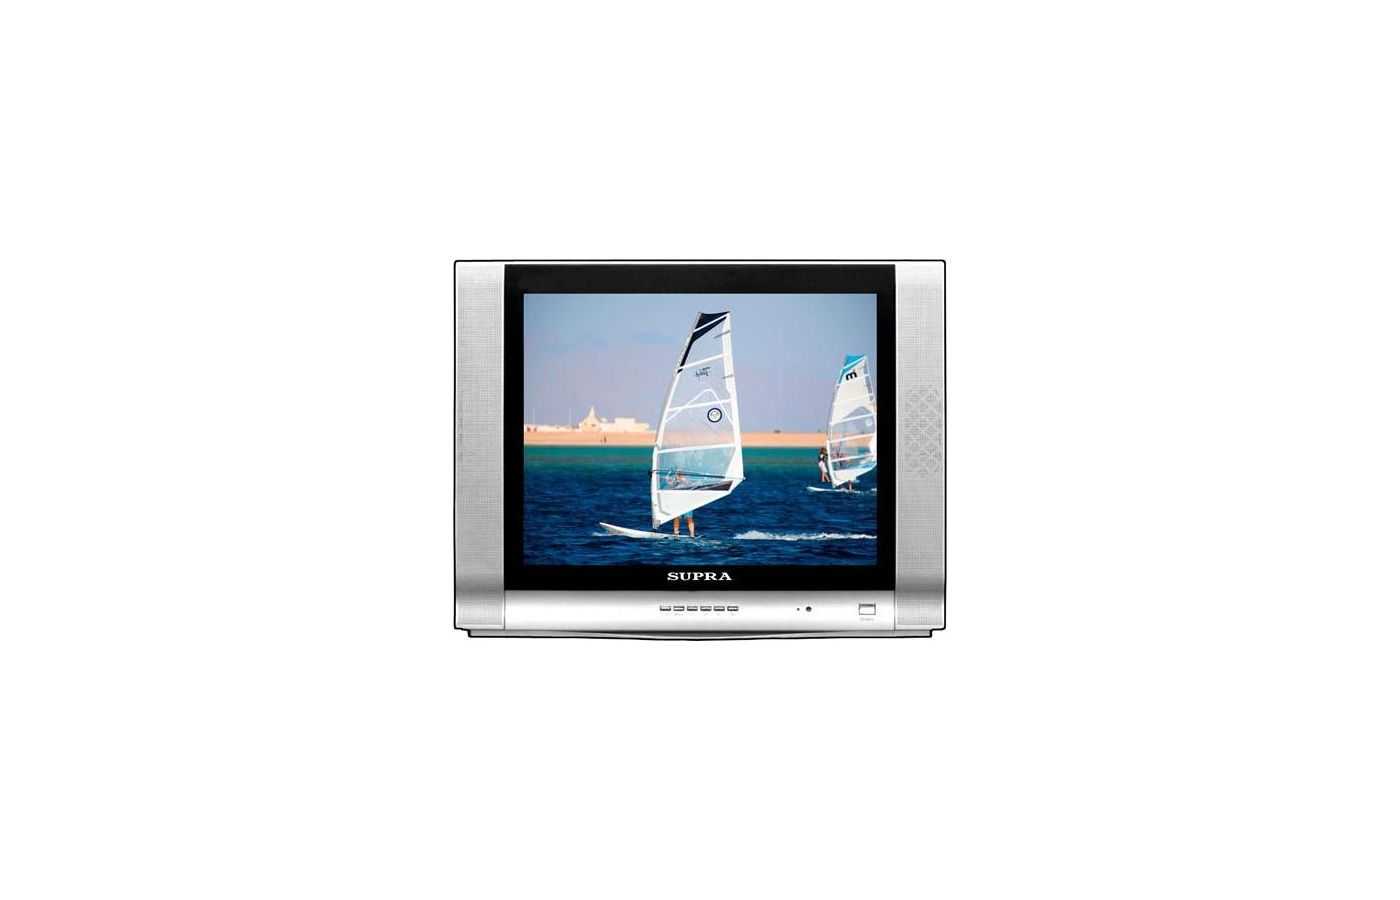 Телевизор Supra CTV-14011 - подробные характеристики обзоры видео фото Цены в интернет-магазинах где можно купить телевизор Supra CTV-14011